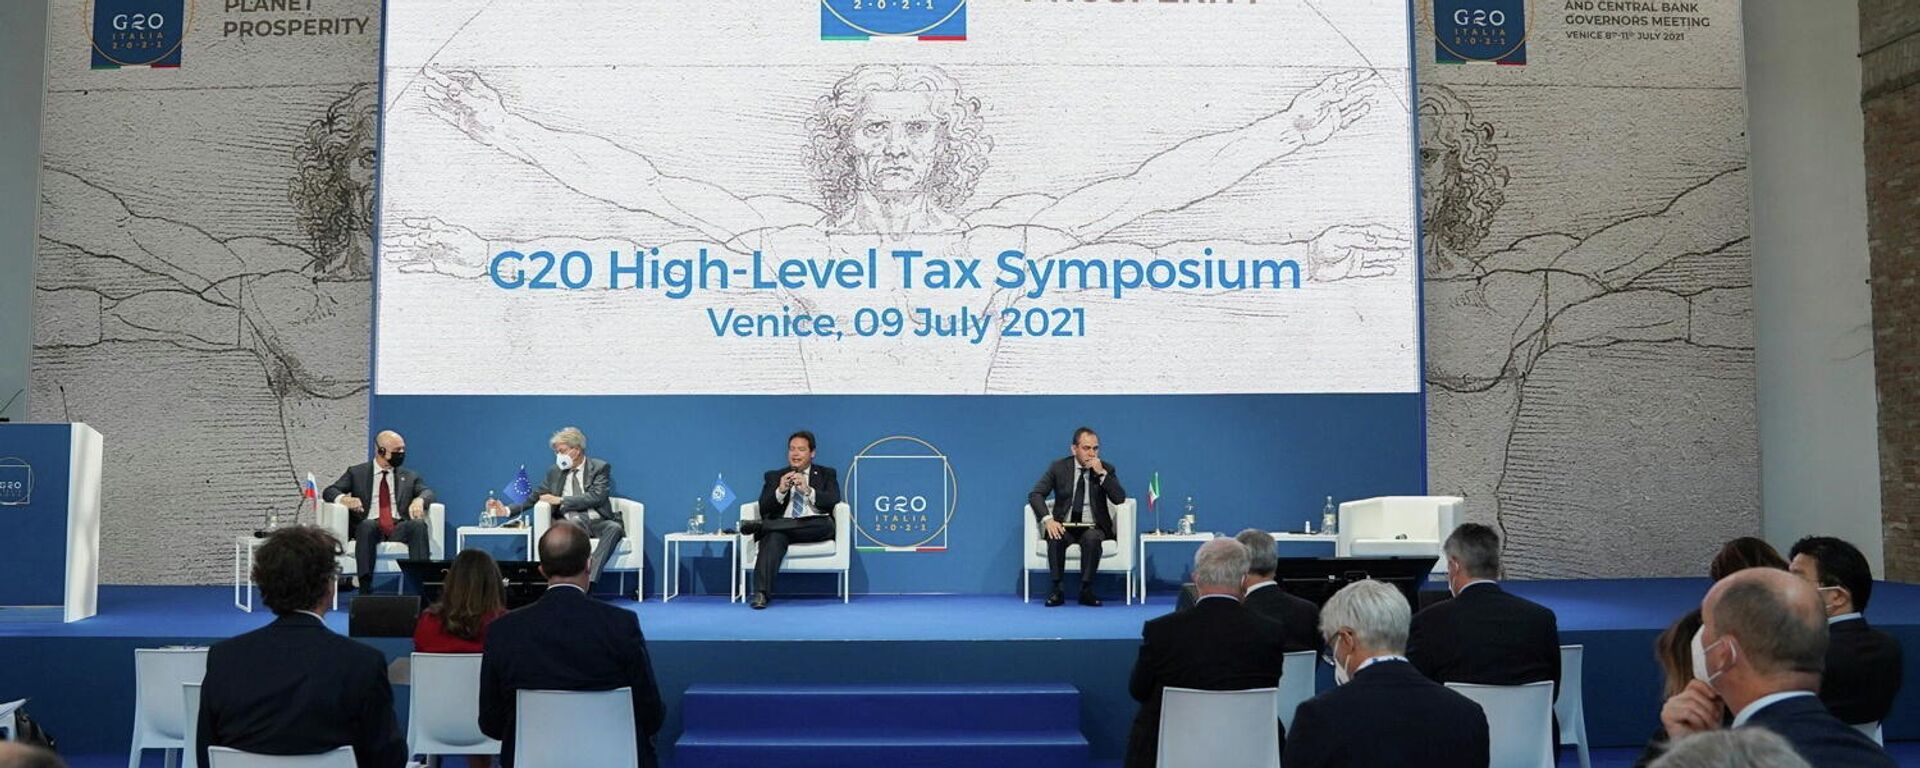 Los participantes asisten al simposio fiscal de alto nivel del G20 durante la reunión de ministros de Finanzas y gobernadores de Bancos Centrales del G20 en Venecia, Italia, el 9 de julio de 2021 - Sputnik Mundo, 1920, 11.07.2021